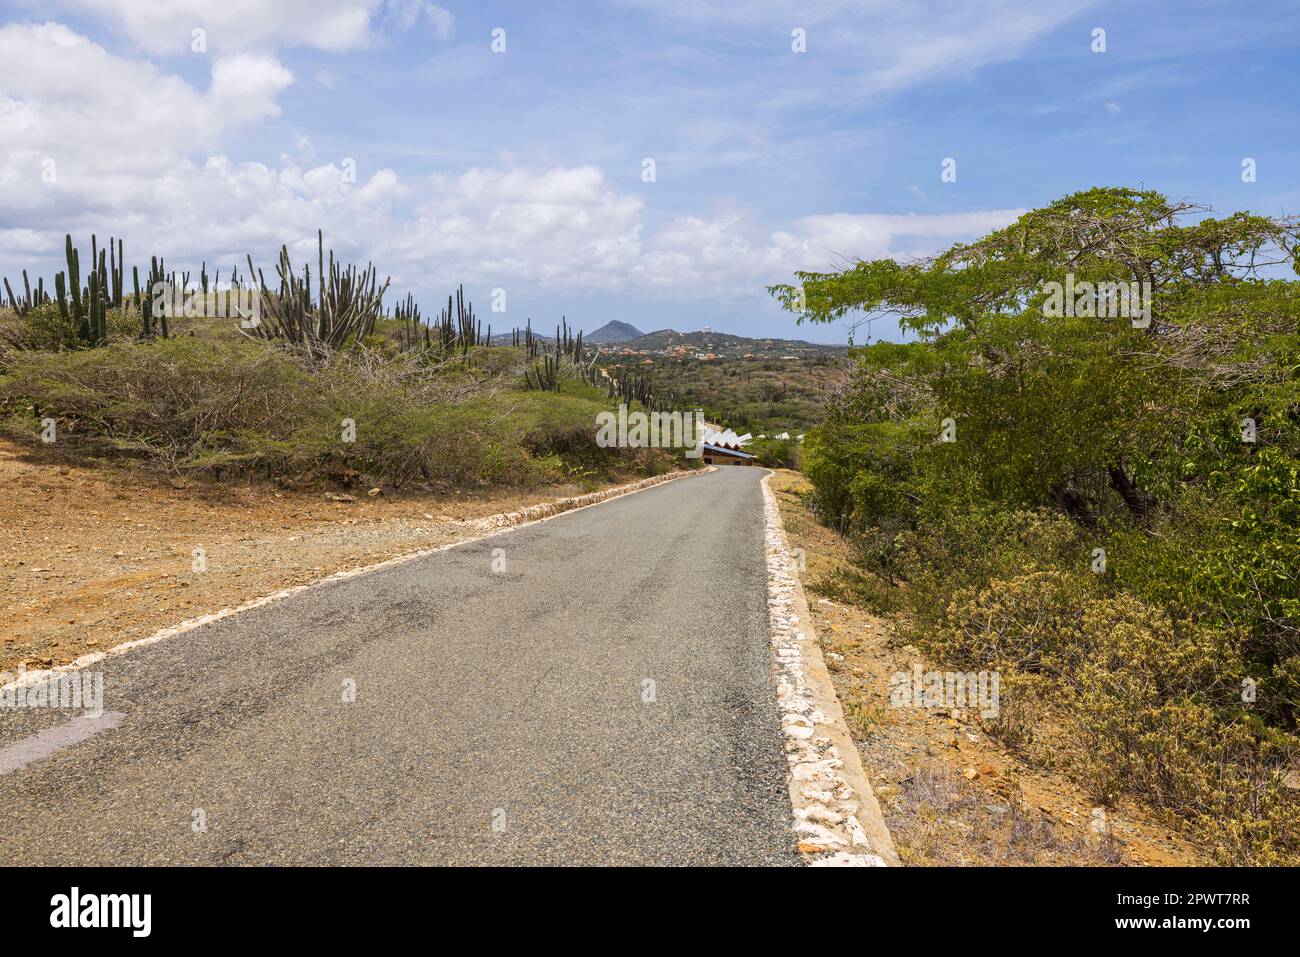 Belle vue sur le désert de pierre du parc naturel sur l'île d'Aruba avec route asphaltée pour véhicules. Aruba. Banque D'Images